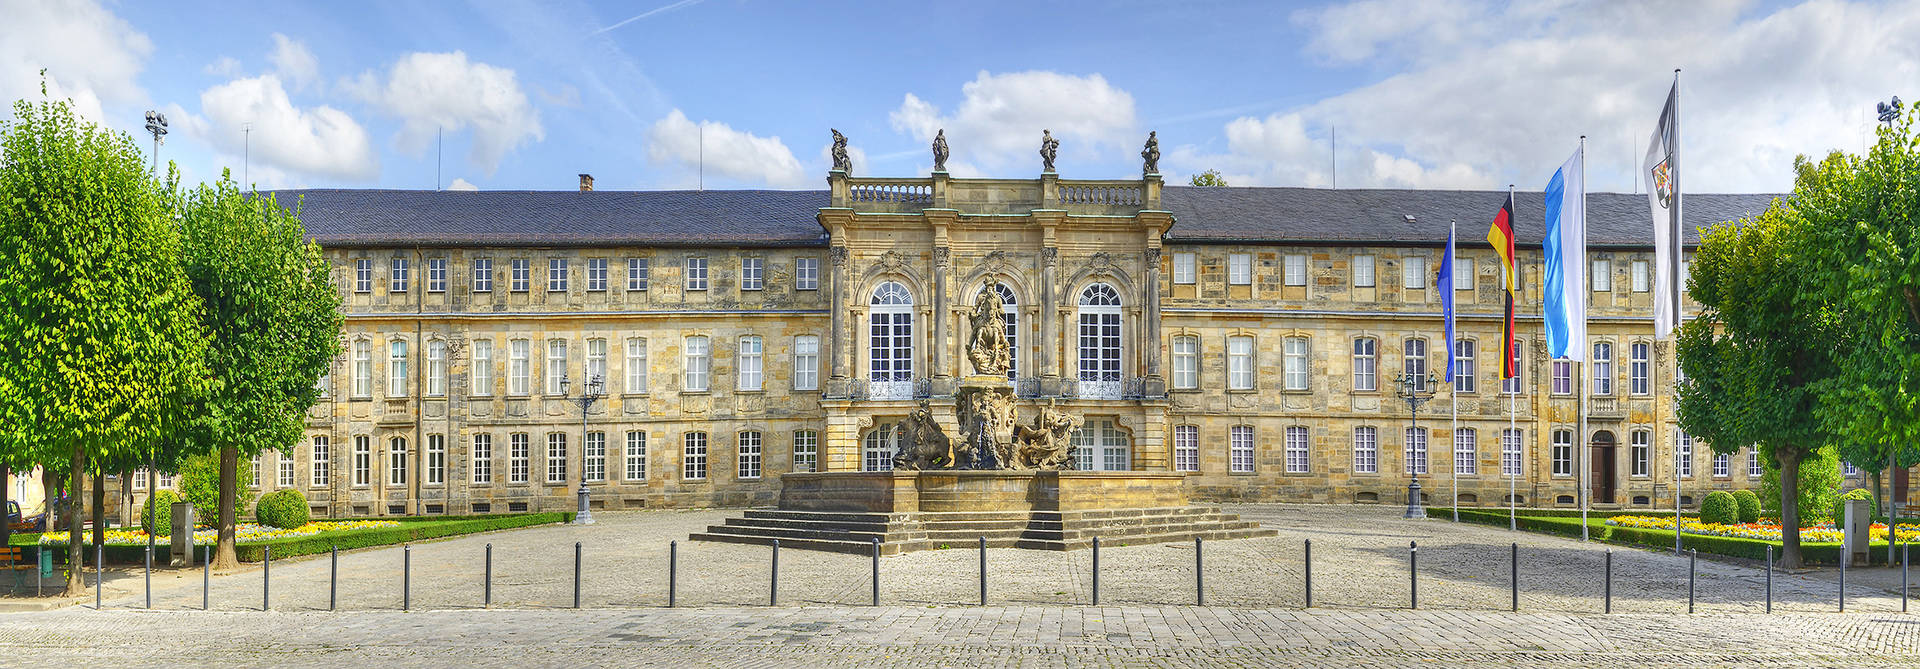 новый замок - H4 Hotel Residenzschloss Bayreuth - официальный веб-сайт